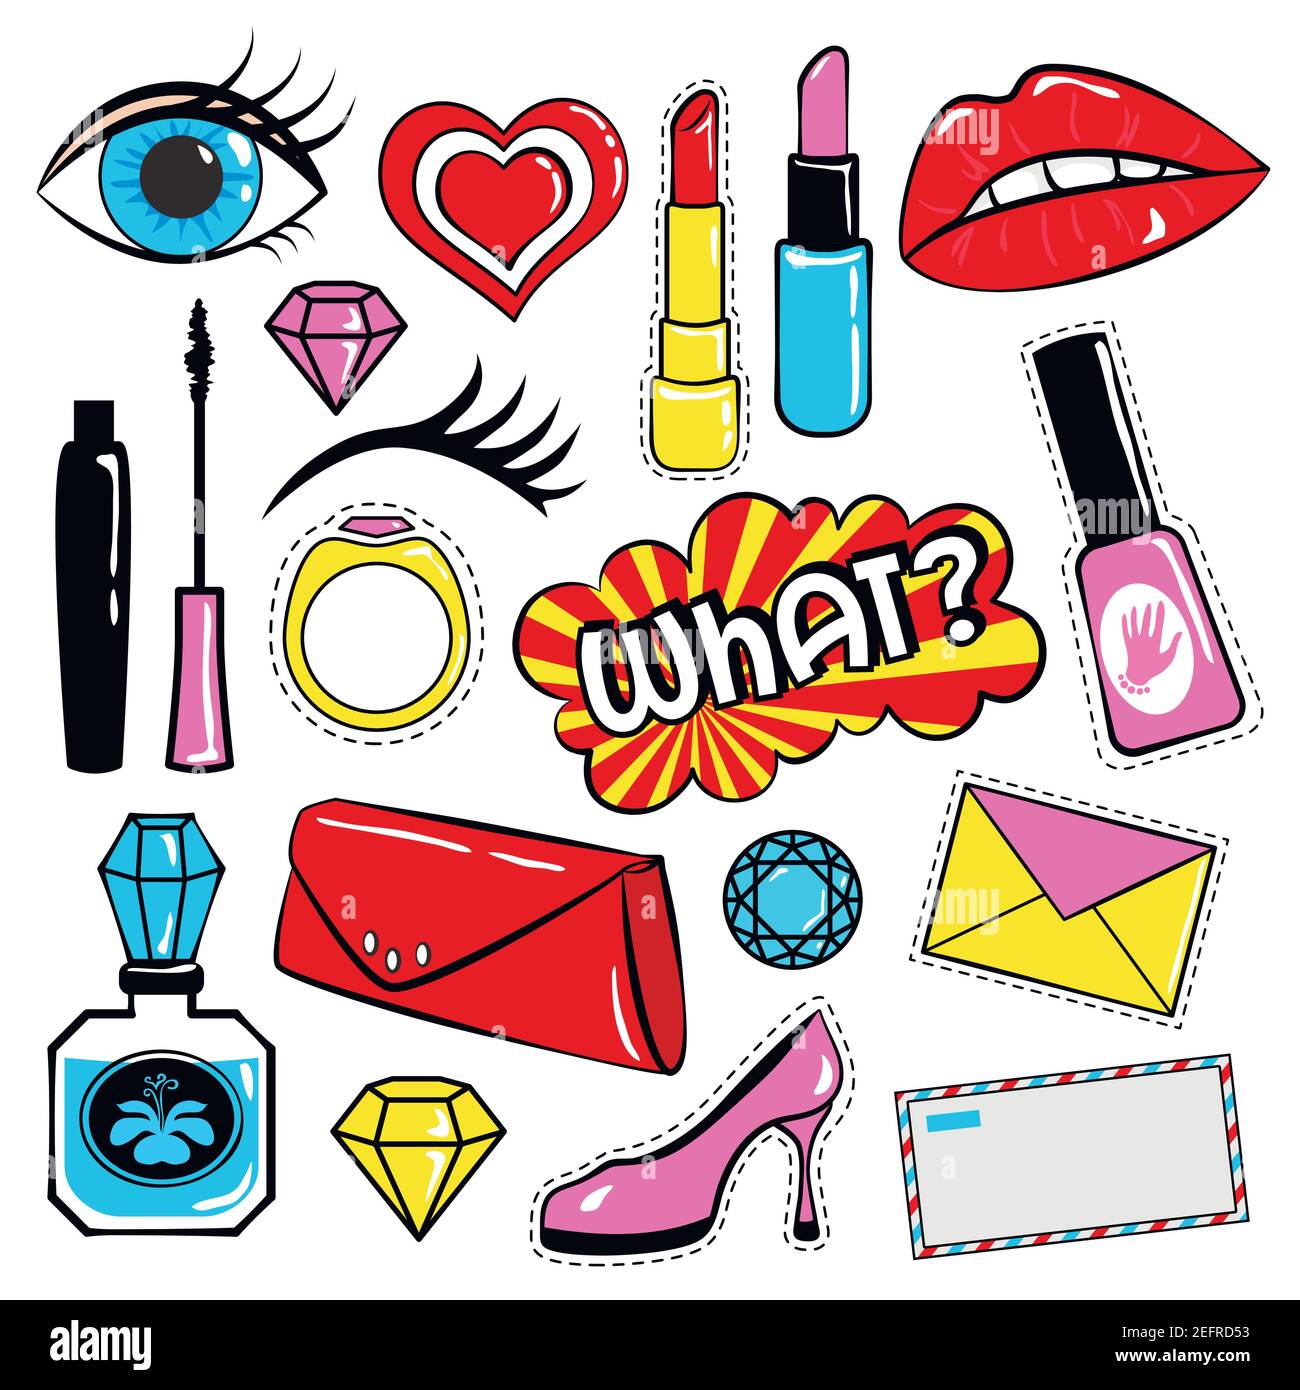 Colección de pegatinas e insignias en estilo cómico de los años 80, como labios, corazón, burbujas del habla, cosméticos y otros elementos. Ilustración vectorial aislada Ilustración del Vector